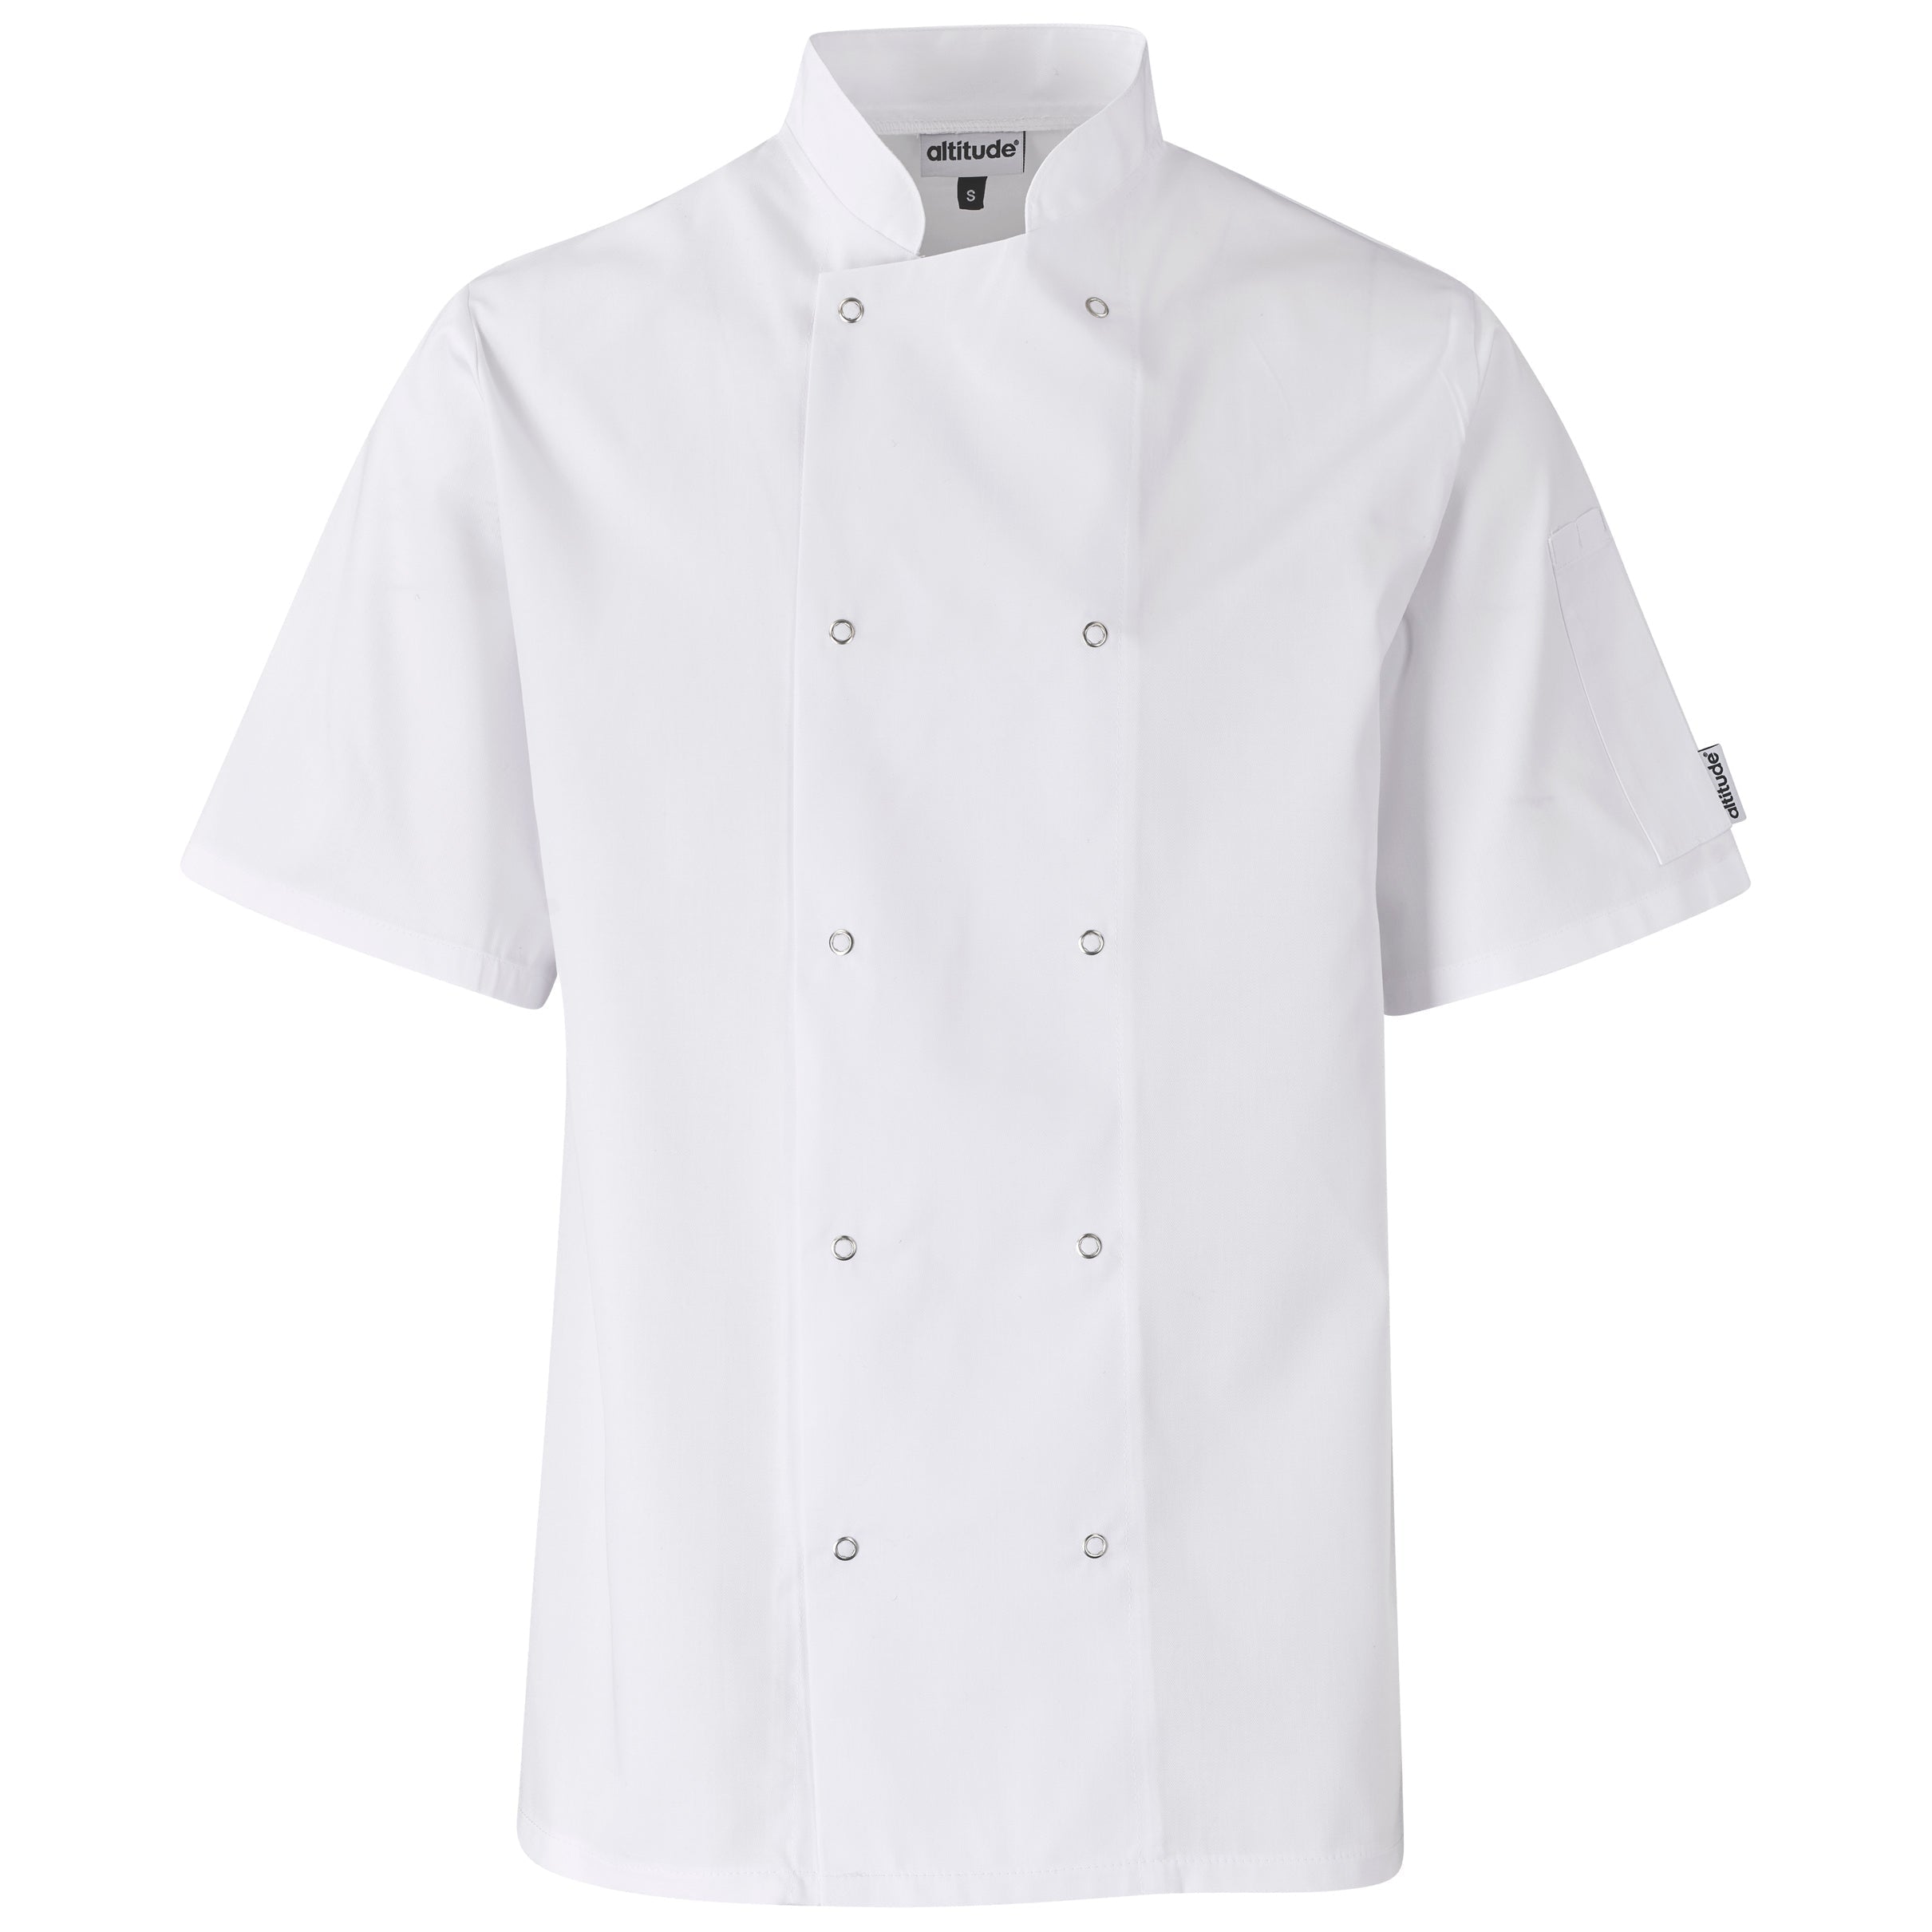 Unisex Short Sleeve Chef Jacket-Chef's Jackets